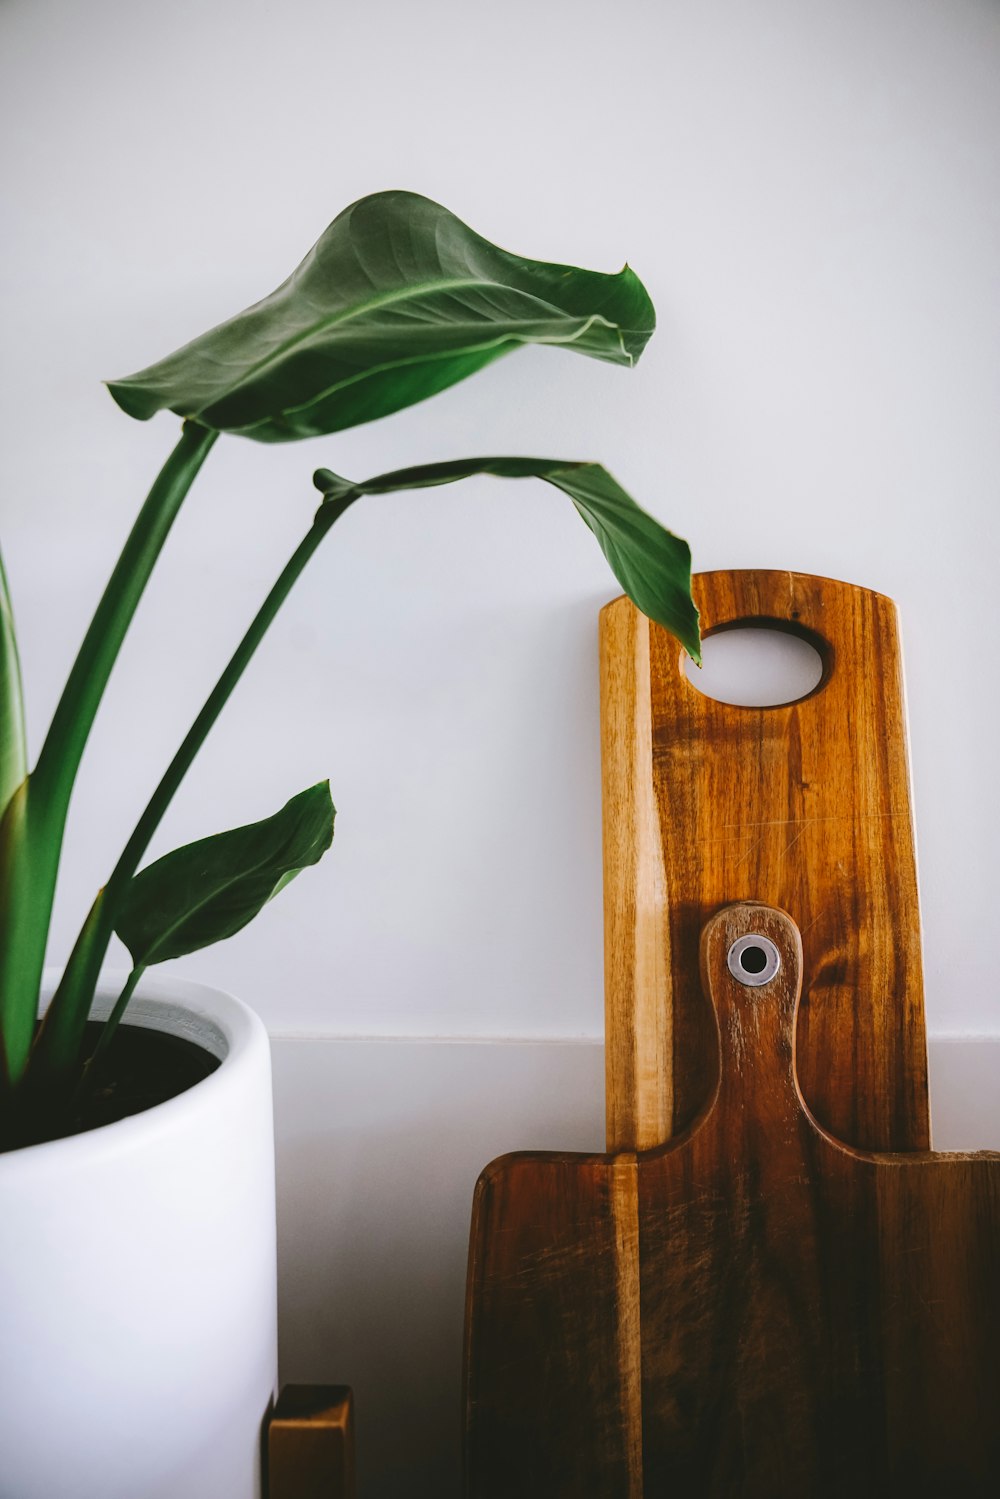 Un tagliere di legno sormontato da utensili da cucina foto – Hashtag  Immagine gratuita su Unsplash